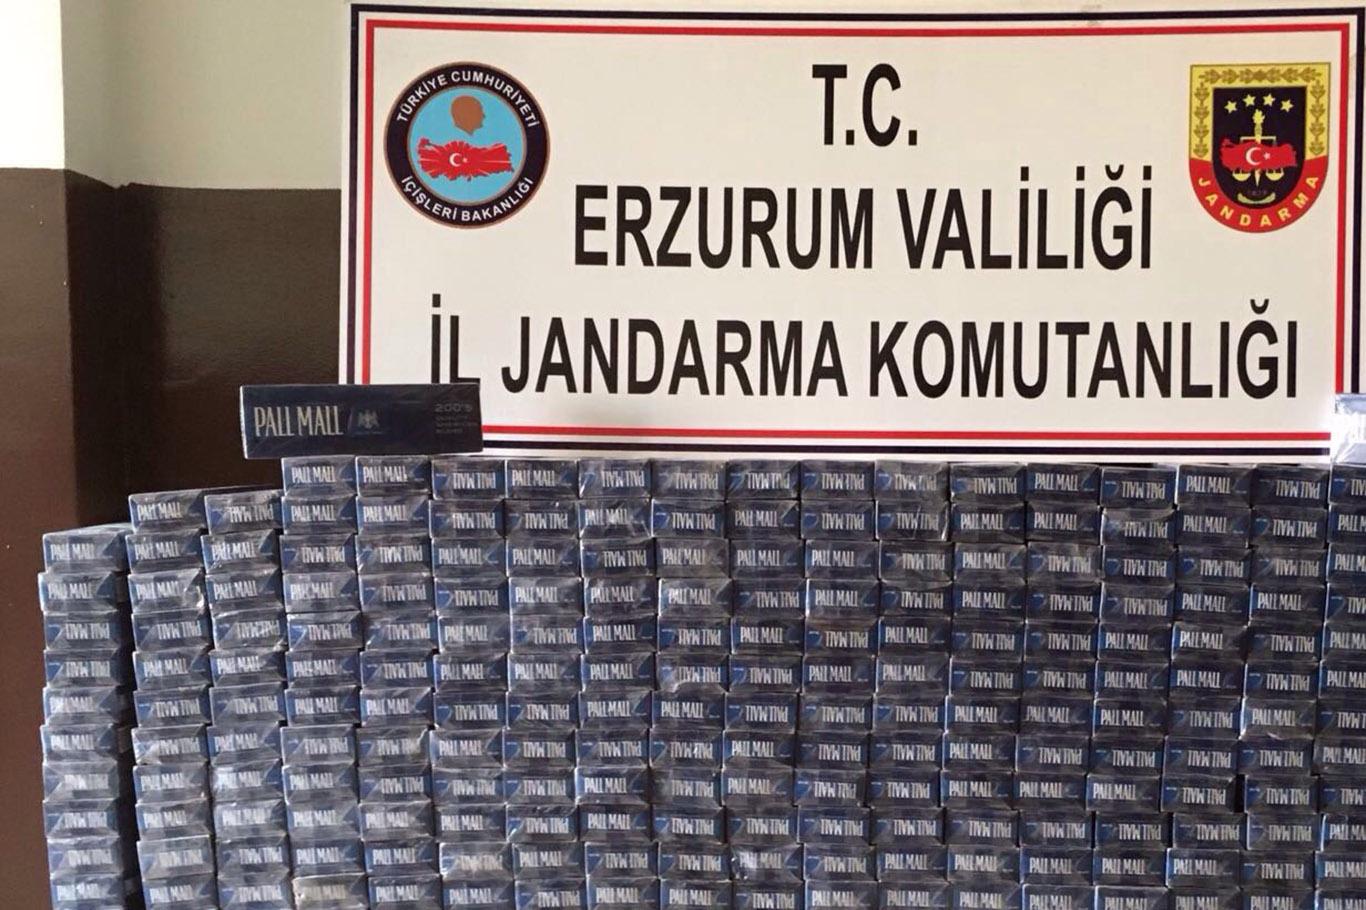 Erzurum'de 5 bin paket kaçak sigara ele geçirildi